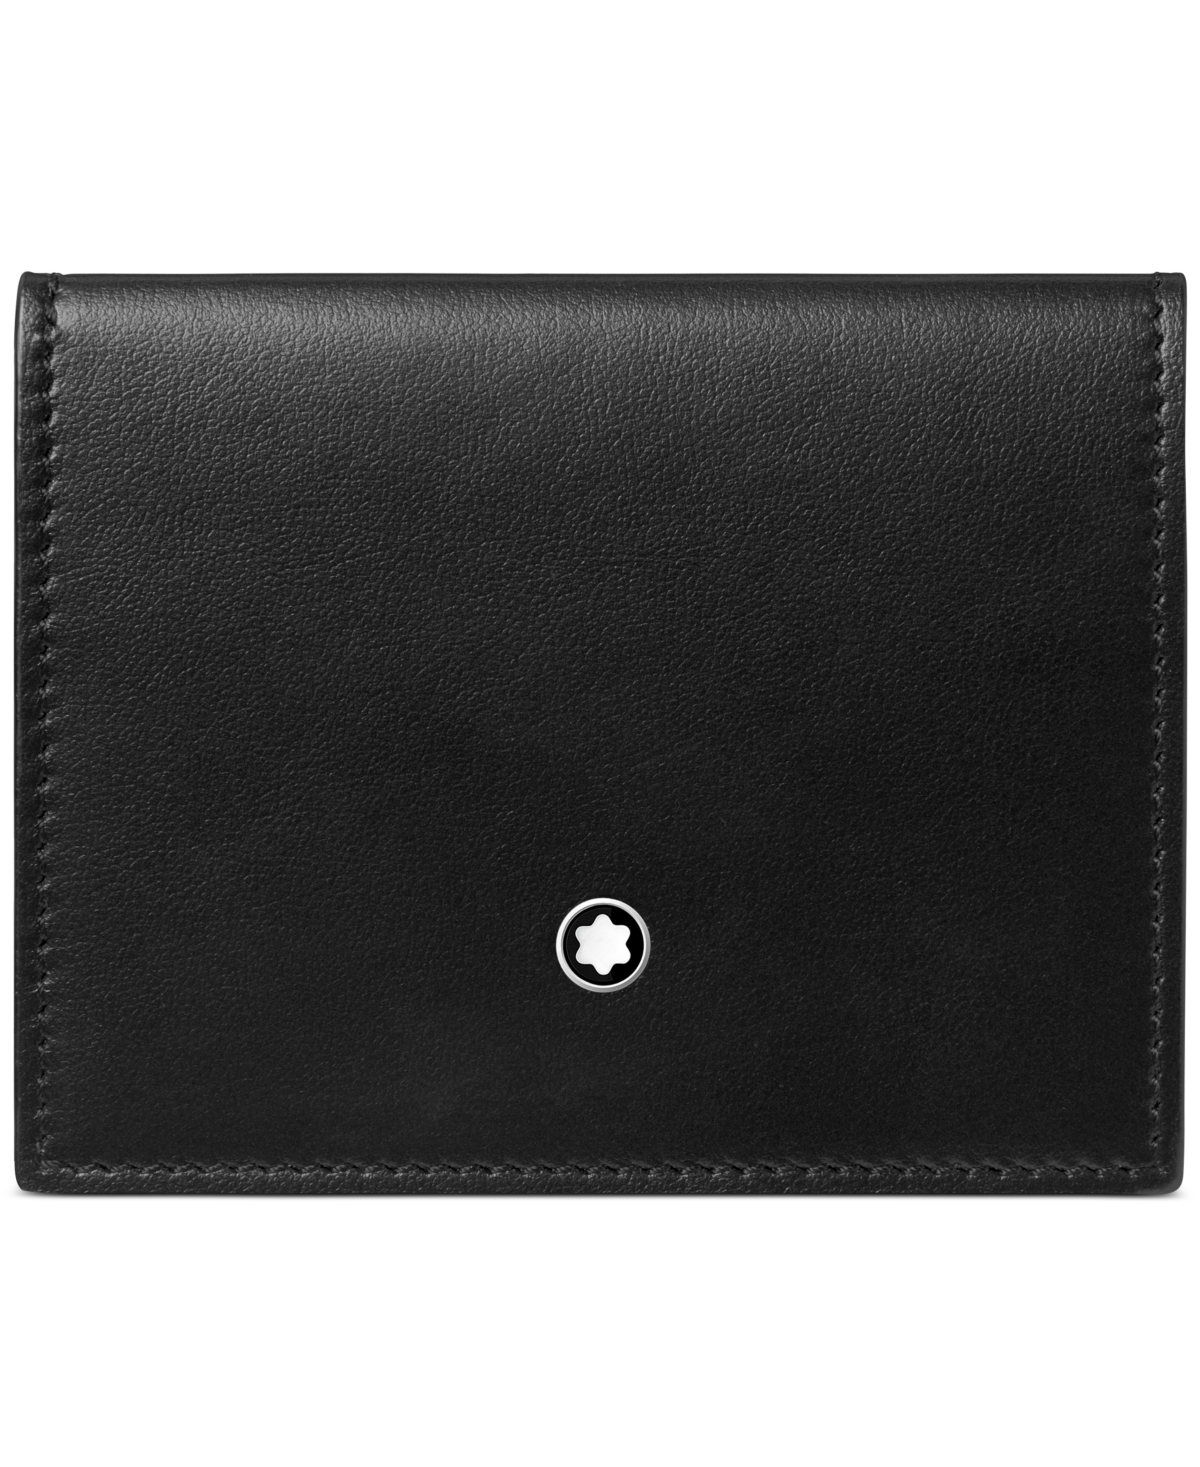 Meisterstuck Soft Leather Card Holder - Black